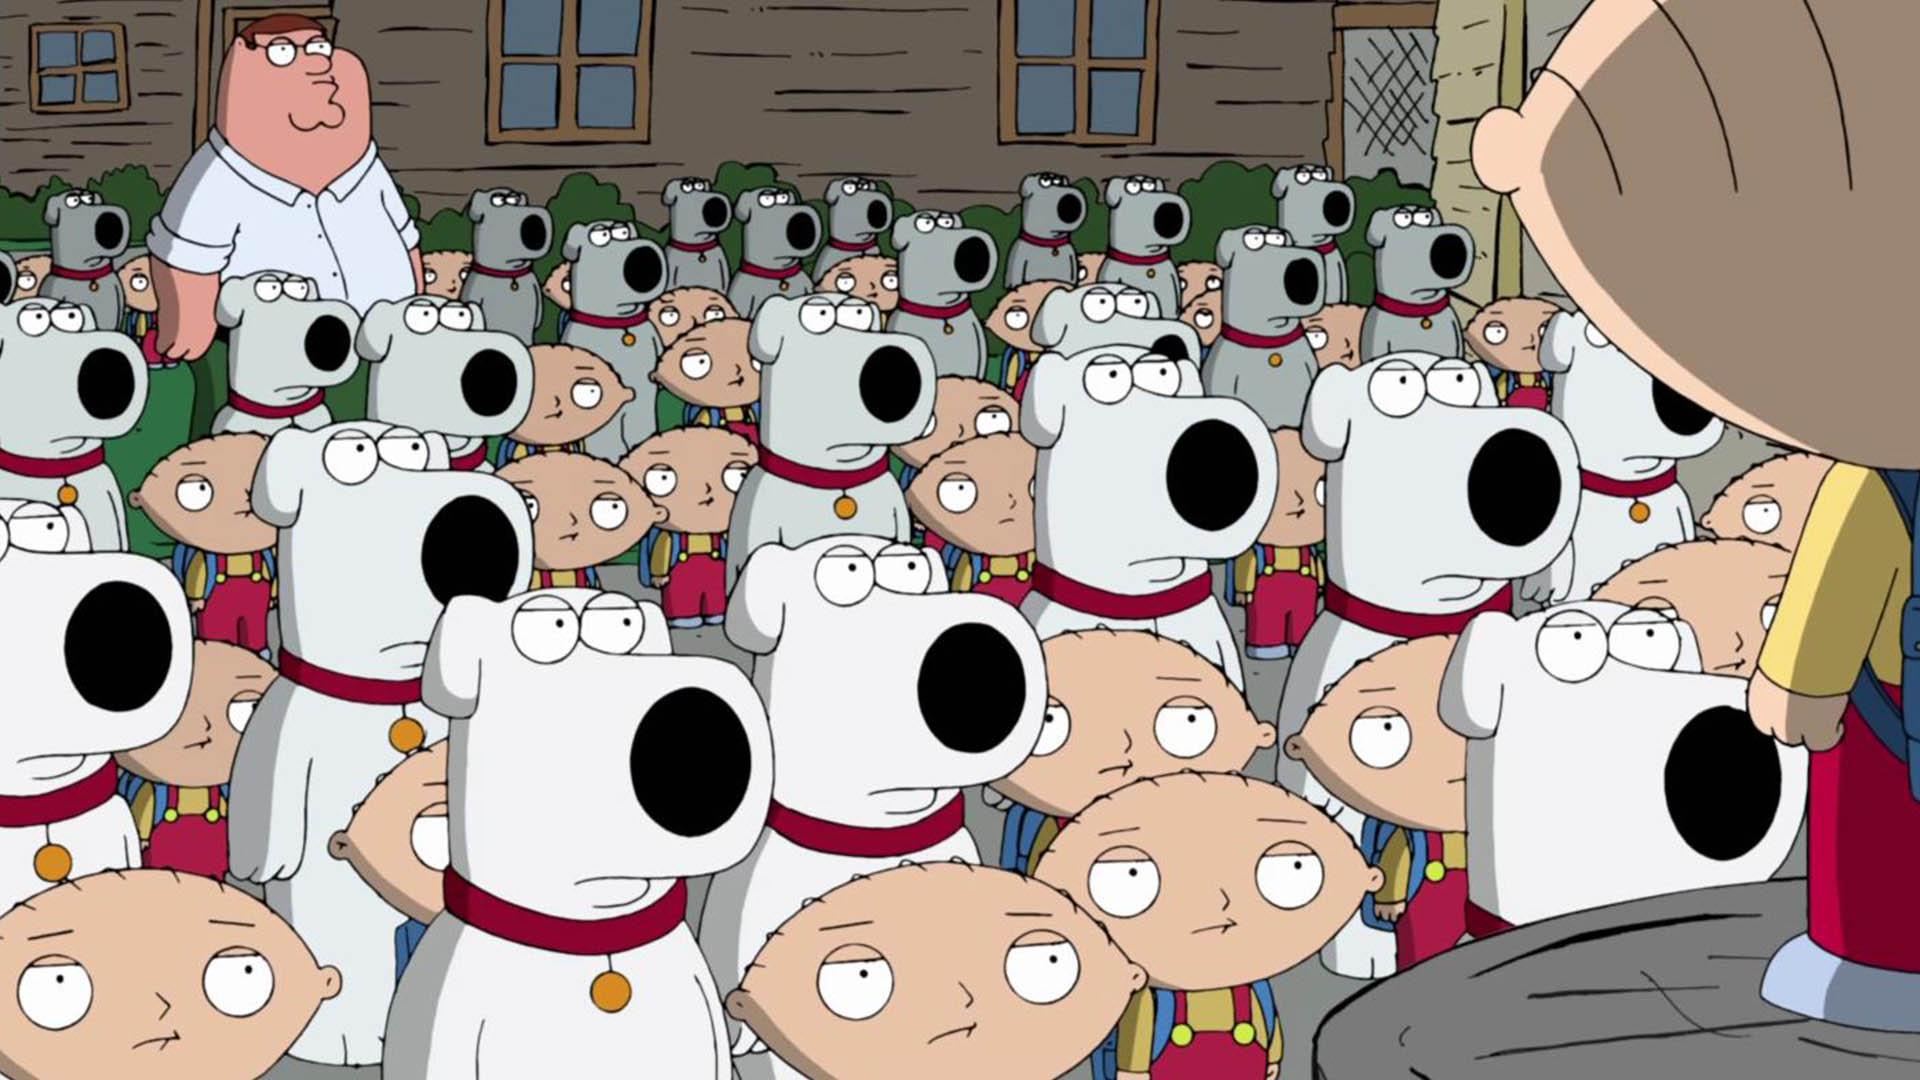 بازگشت به قسمت نخست در سریال Family Guy